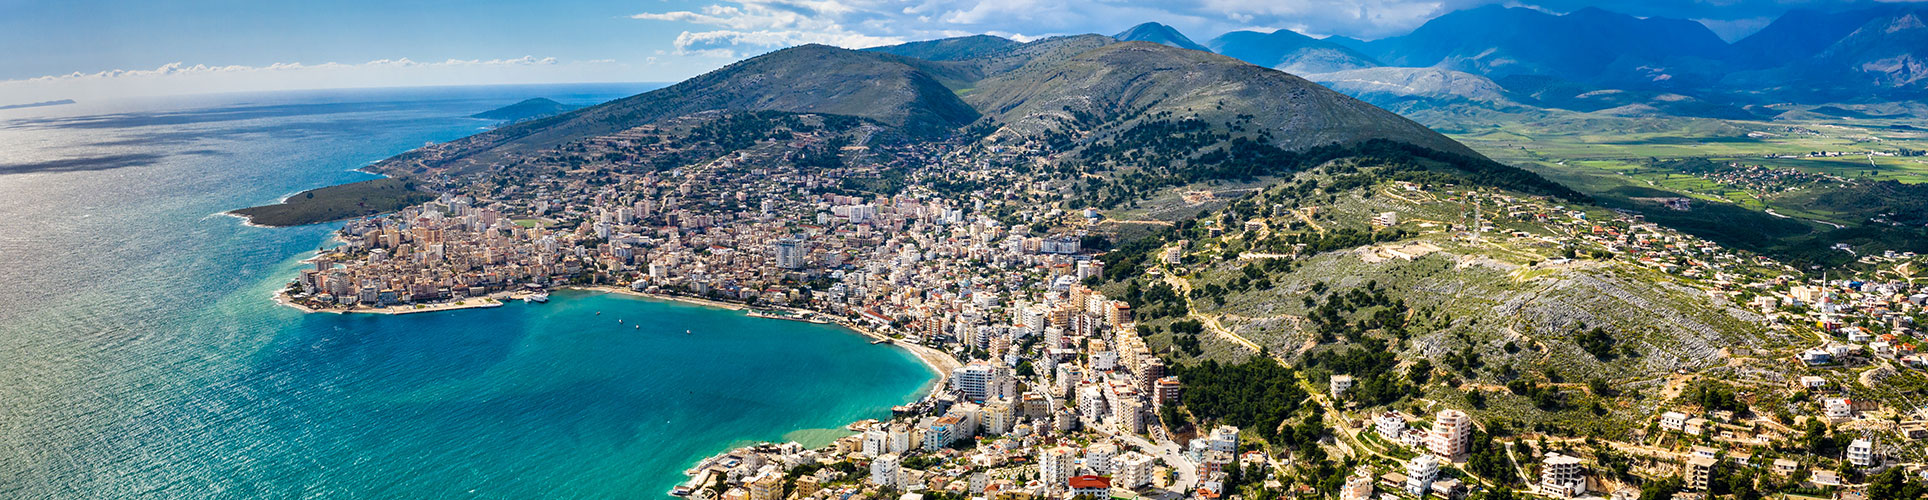 Albanien – Berge, Meer, Geschichte und mehr… eine unvergessliche Bus- & Schiffsreise durch das faszinierende Land an der Adria 